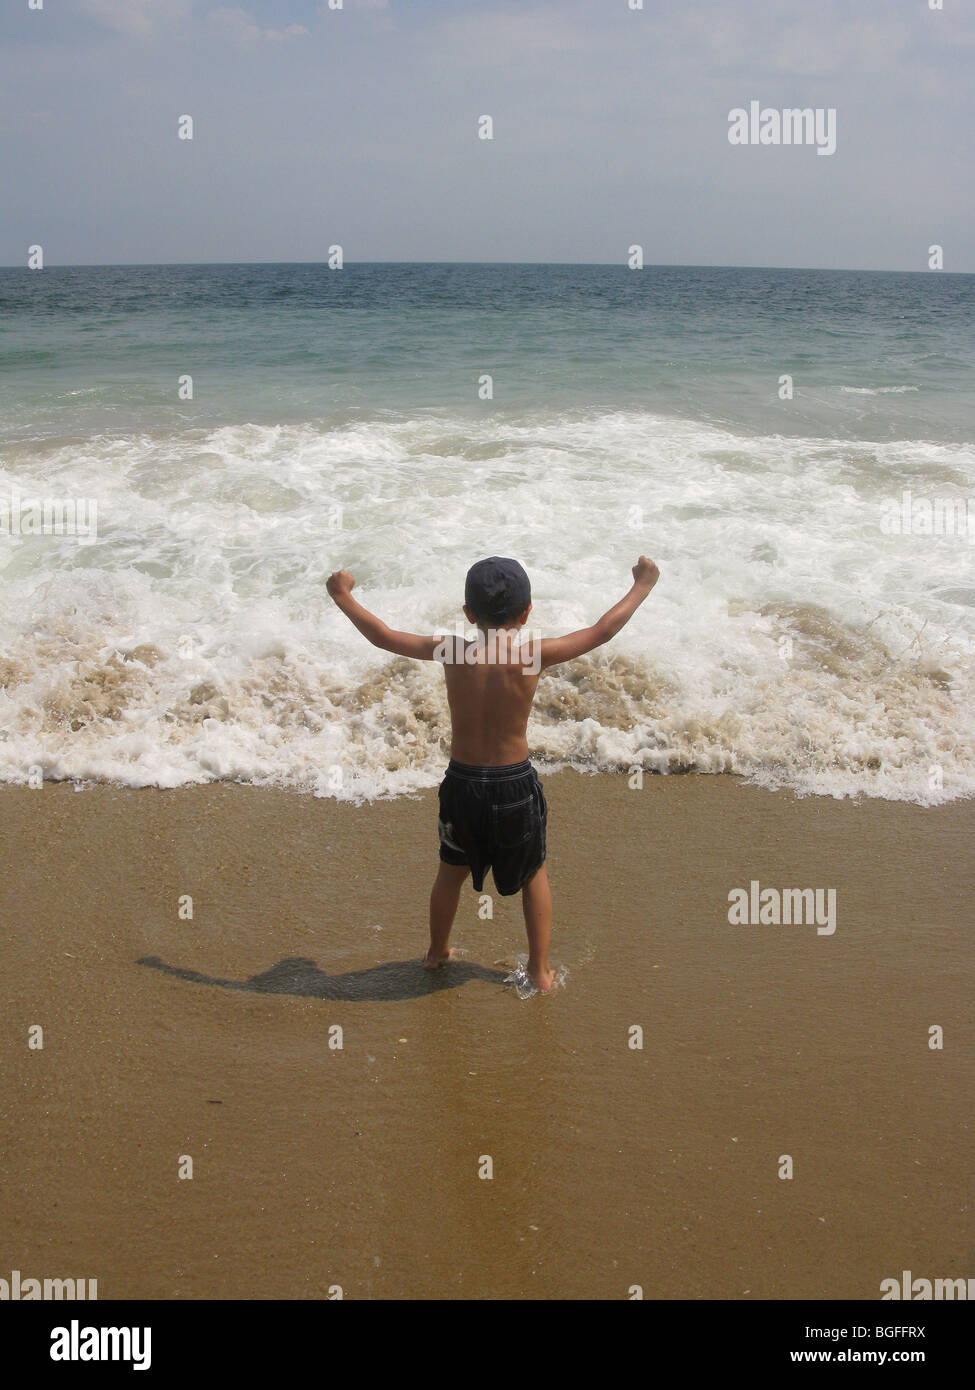 Un jeune garçon au bord de l'eau plage vagues Banque D'Images